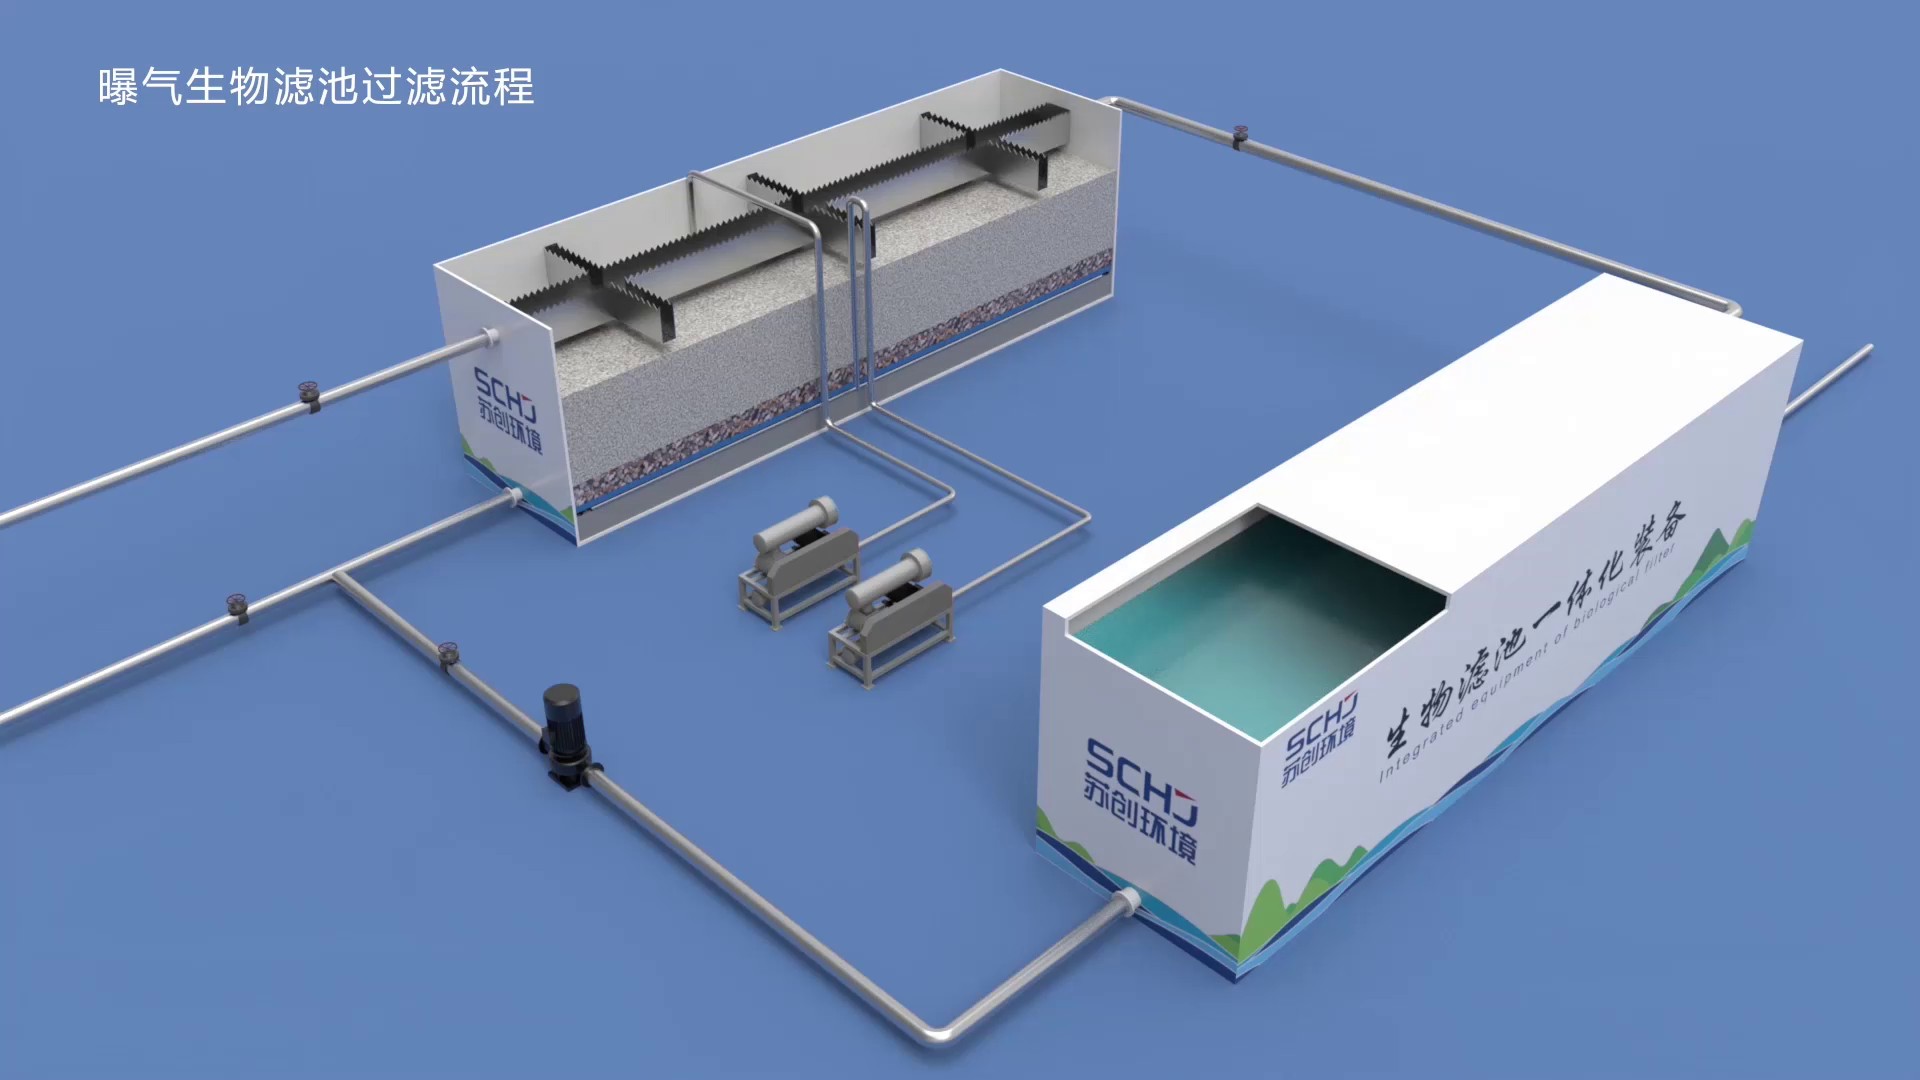 上海曝气生物滤池污水处理设备供应商,污水处理设备